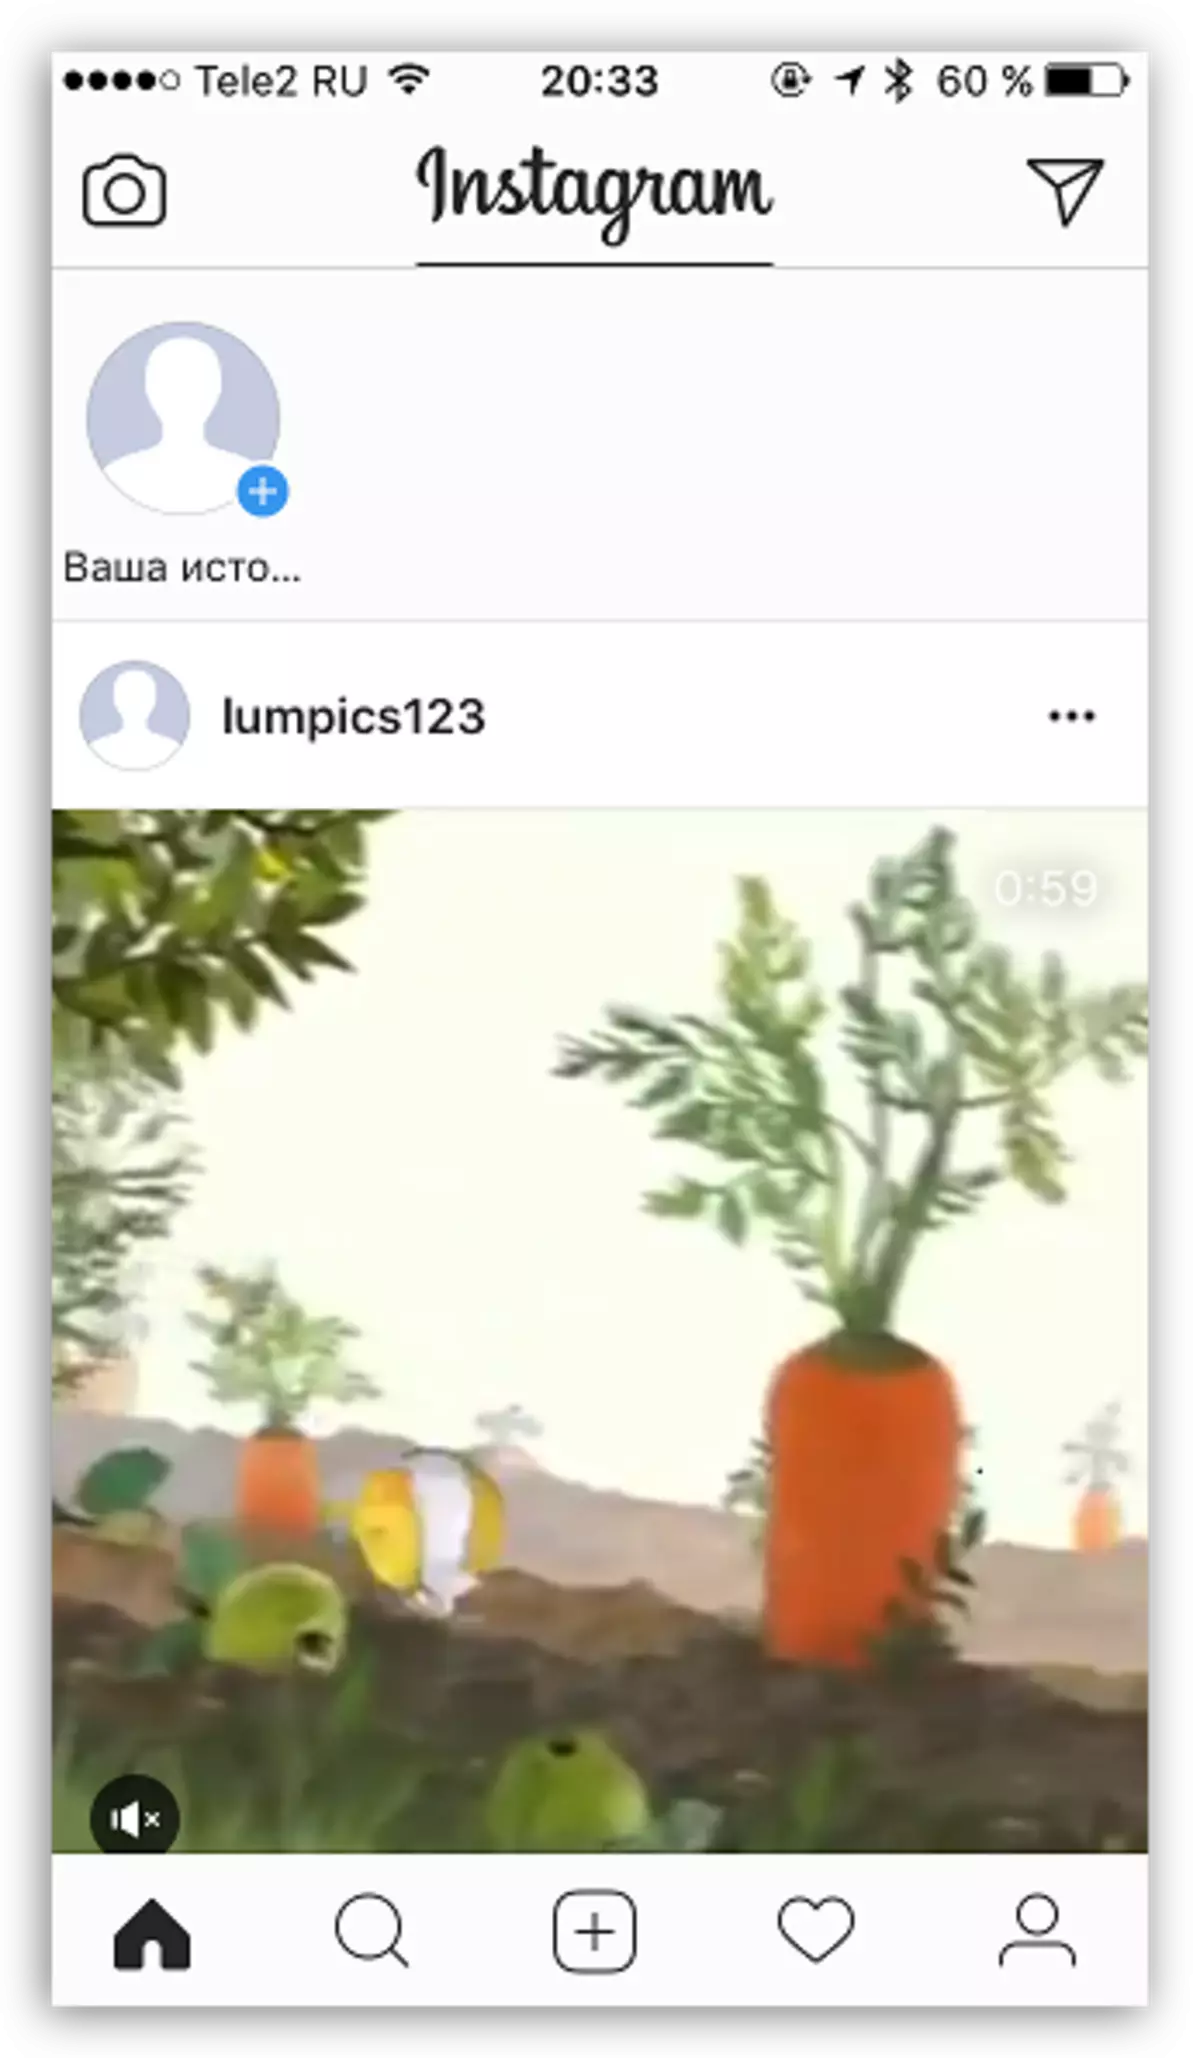 Publikált videó az Instagram-ban a számítógépről